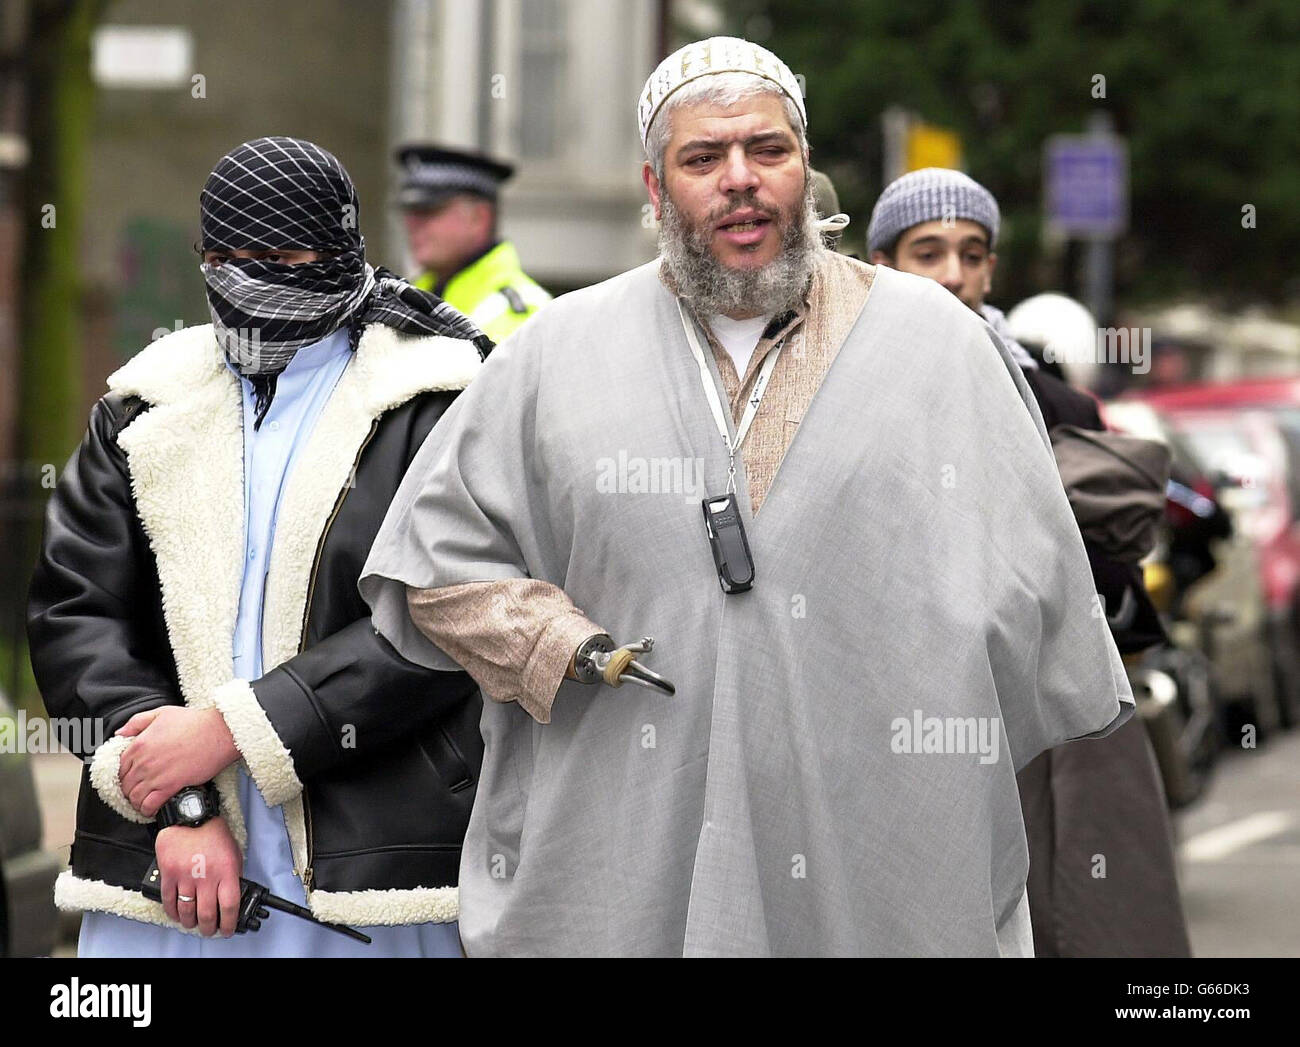 Il chierico musulmano Abu Hamza fuori dalla moschea del Parco di Finsbury, dove gli è stato vietato di parlare dalla Commissione della Carità. Il clericale è stato accusato di abusare della sua posizione per predicare il suo marchio radicale di Islam e fare sermoni infiammatori. Foto Stock